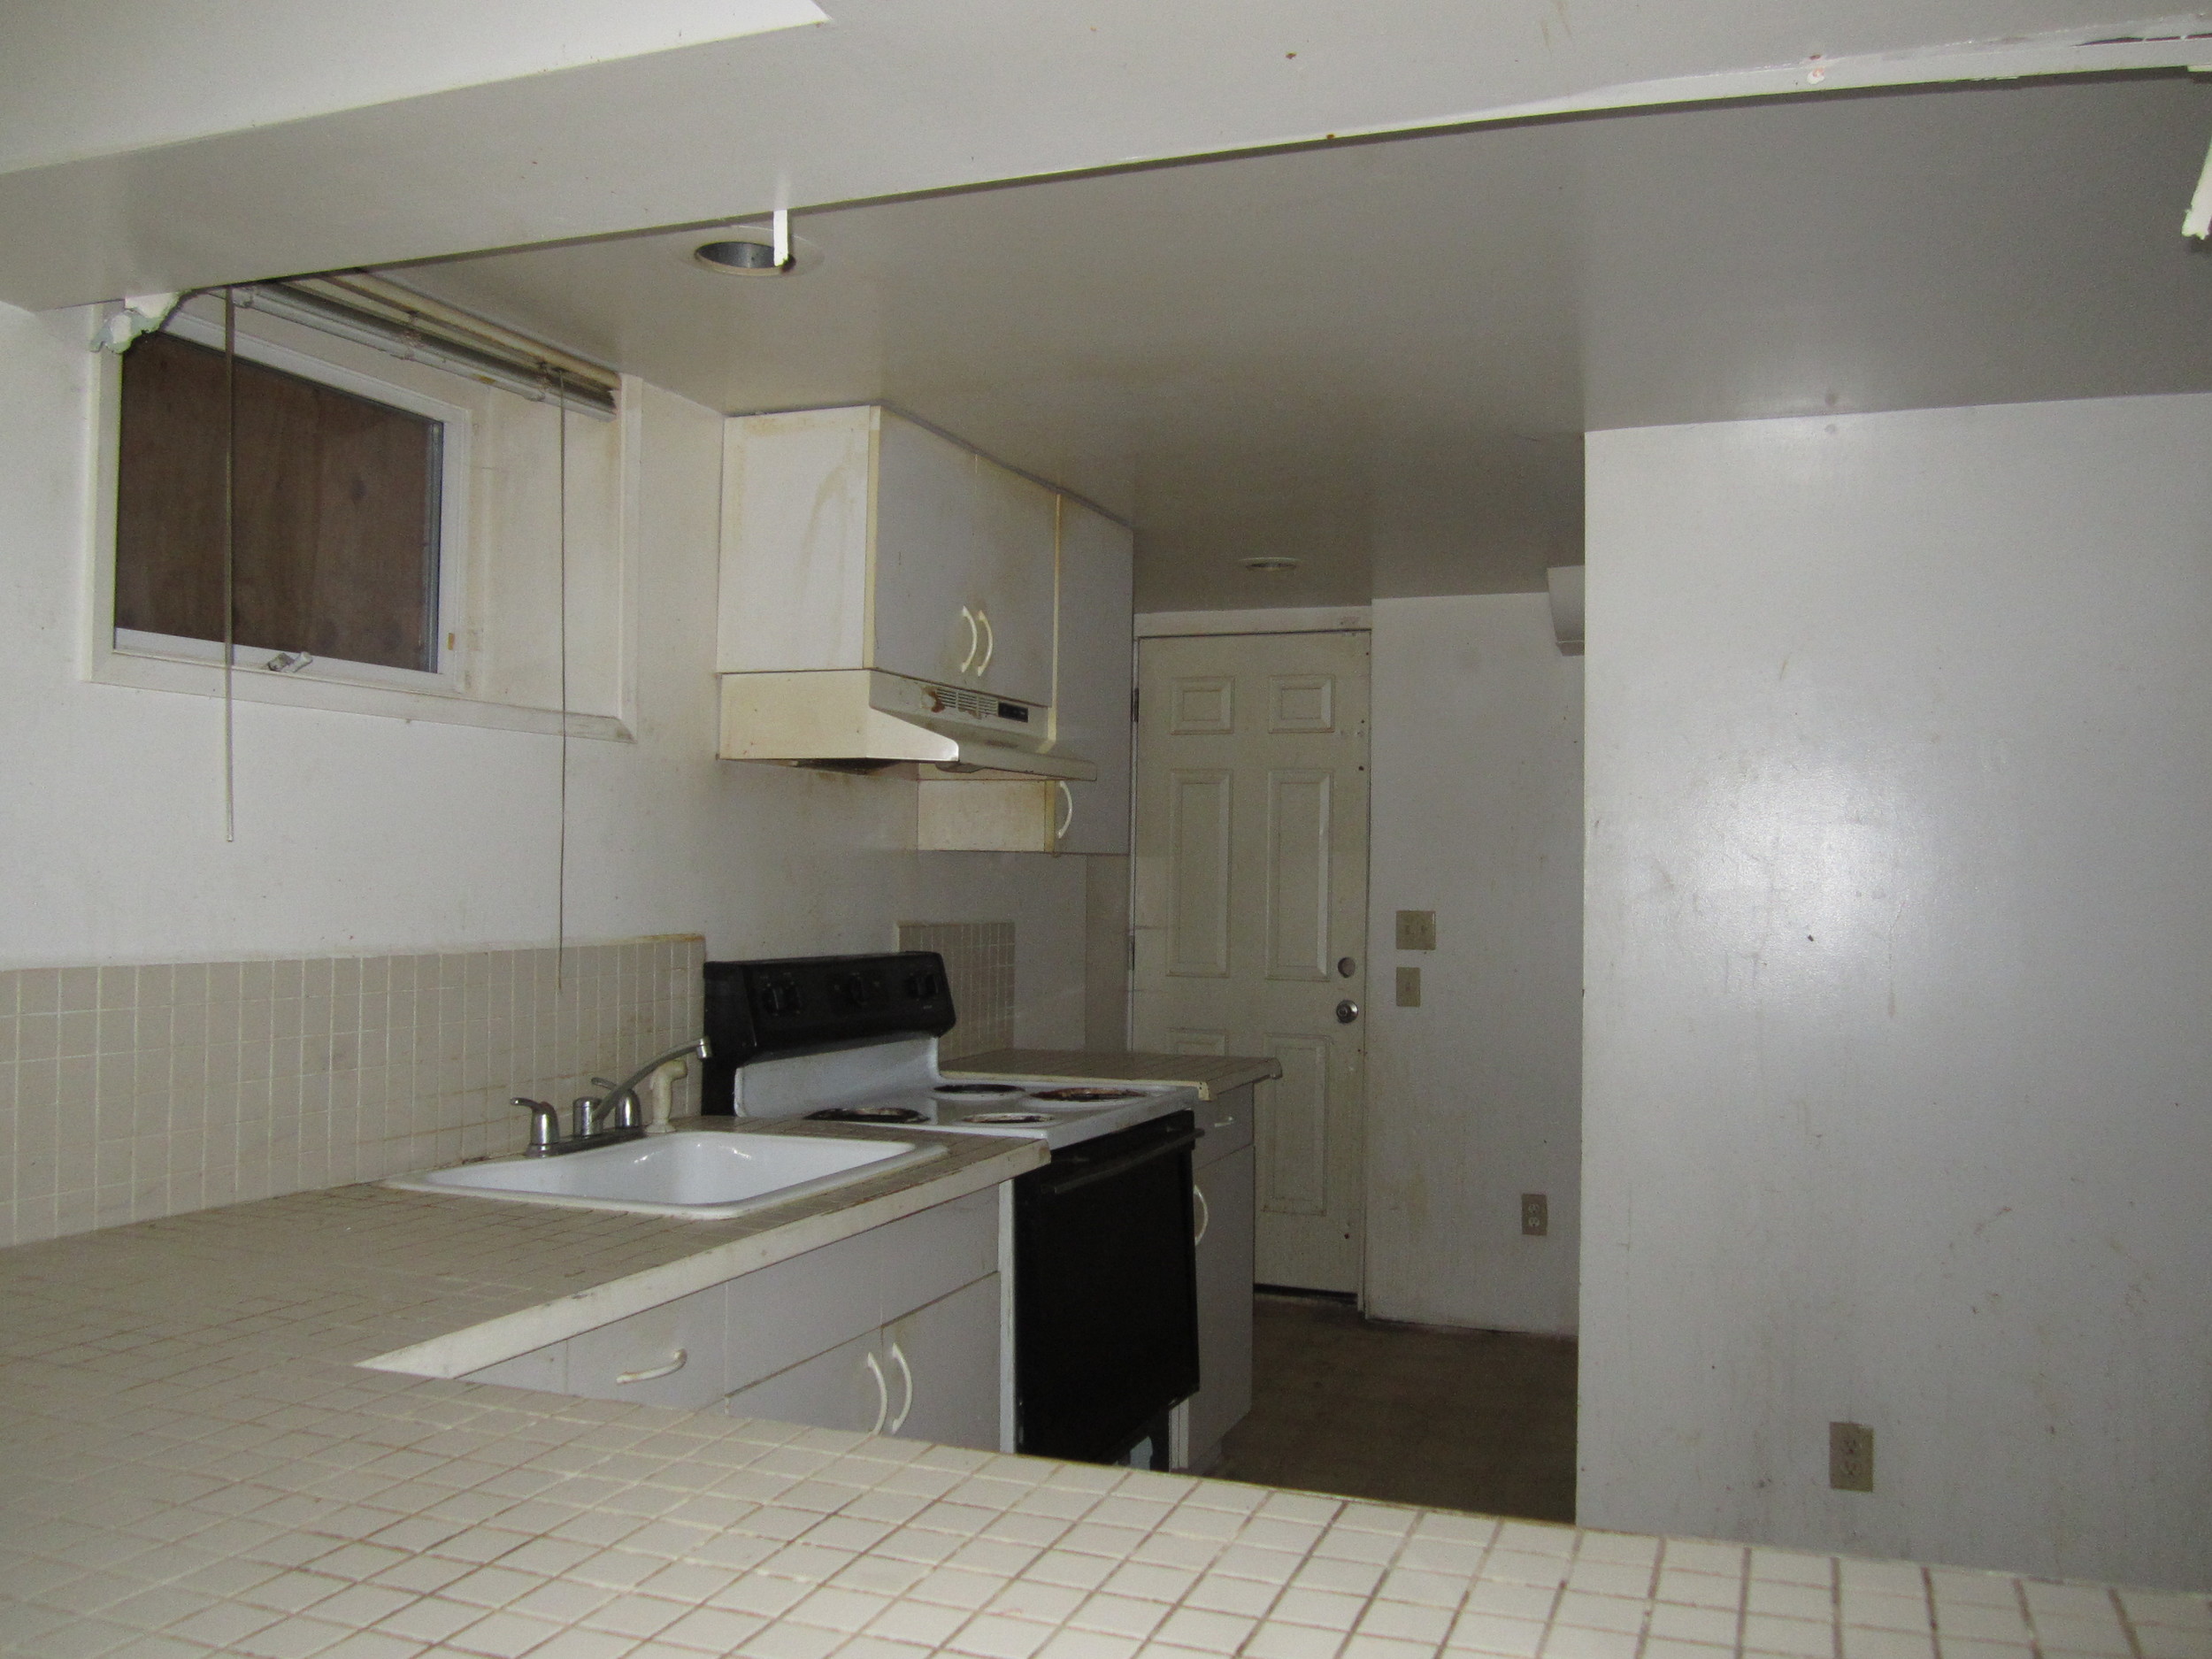 561-869535 - Kitchen 2 basement.JPG